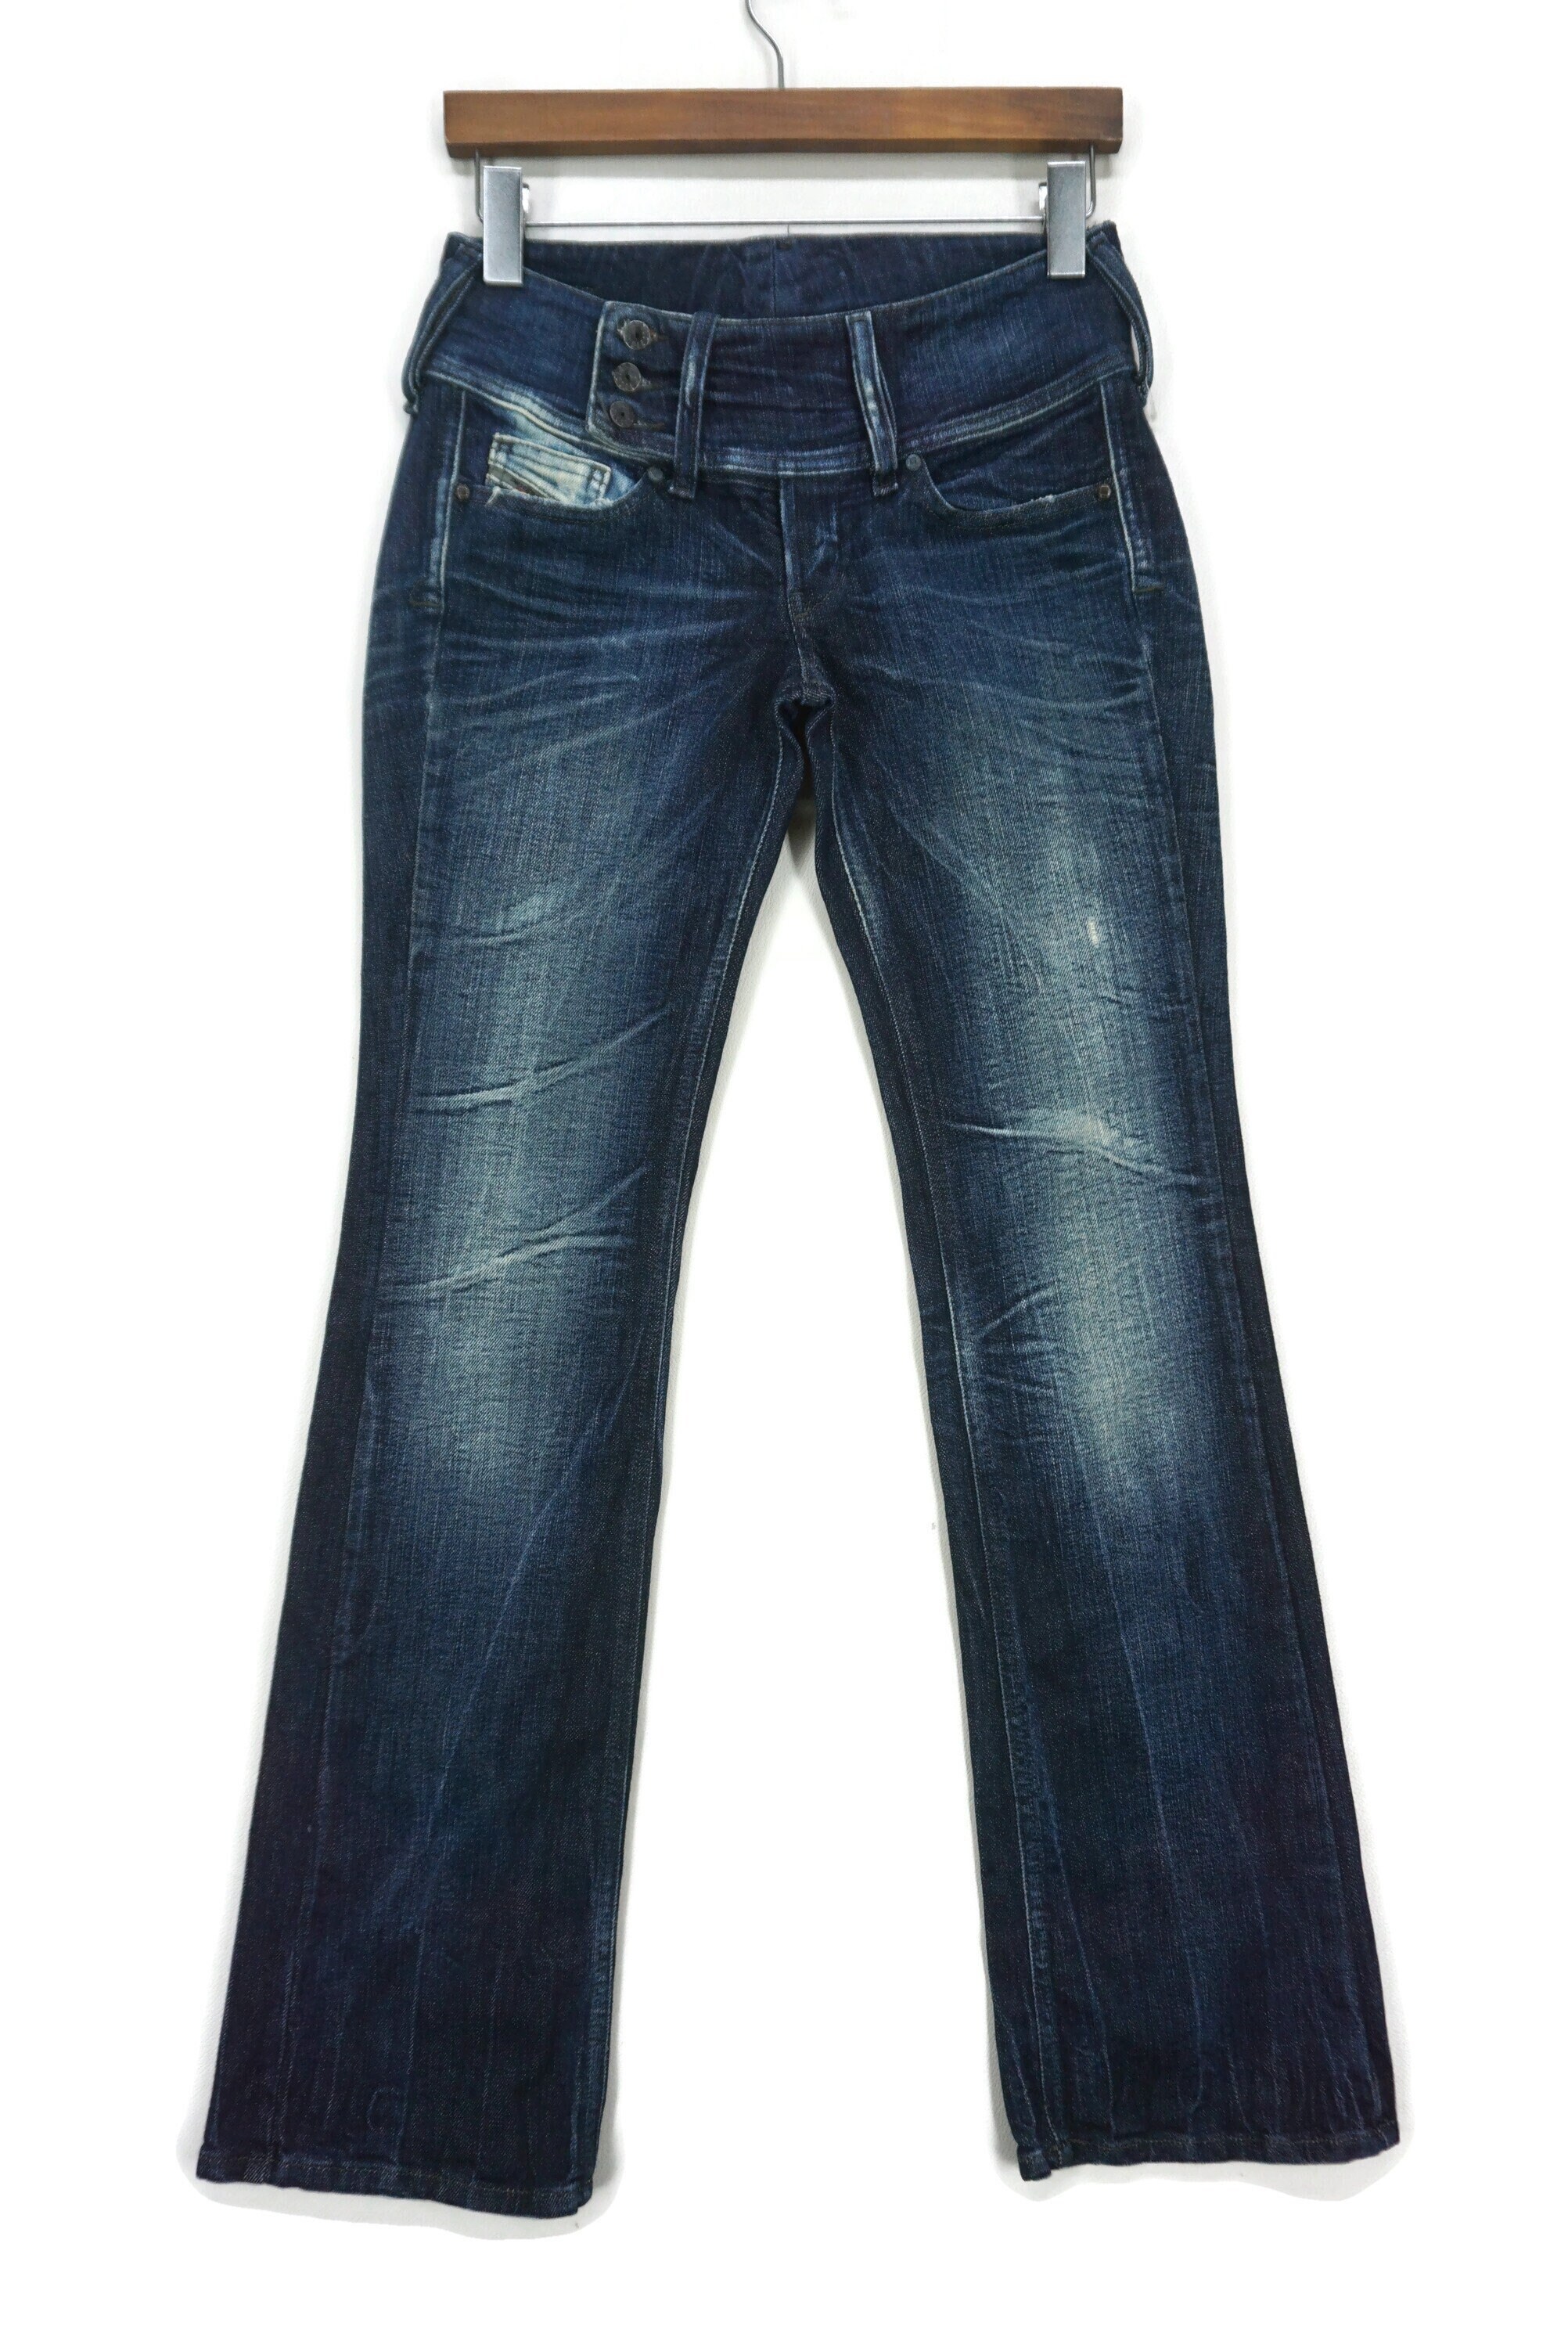 Diesel Jeans Size 27 W30xl31 Diesel Cherock Denim - Etsy